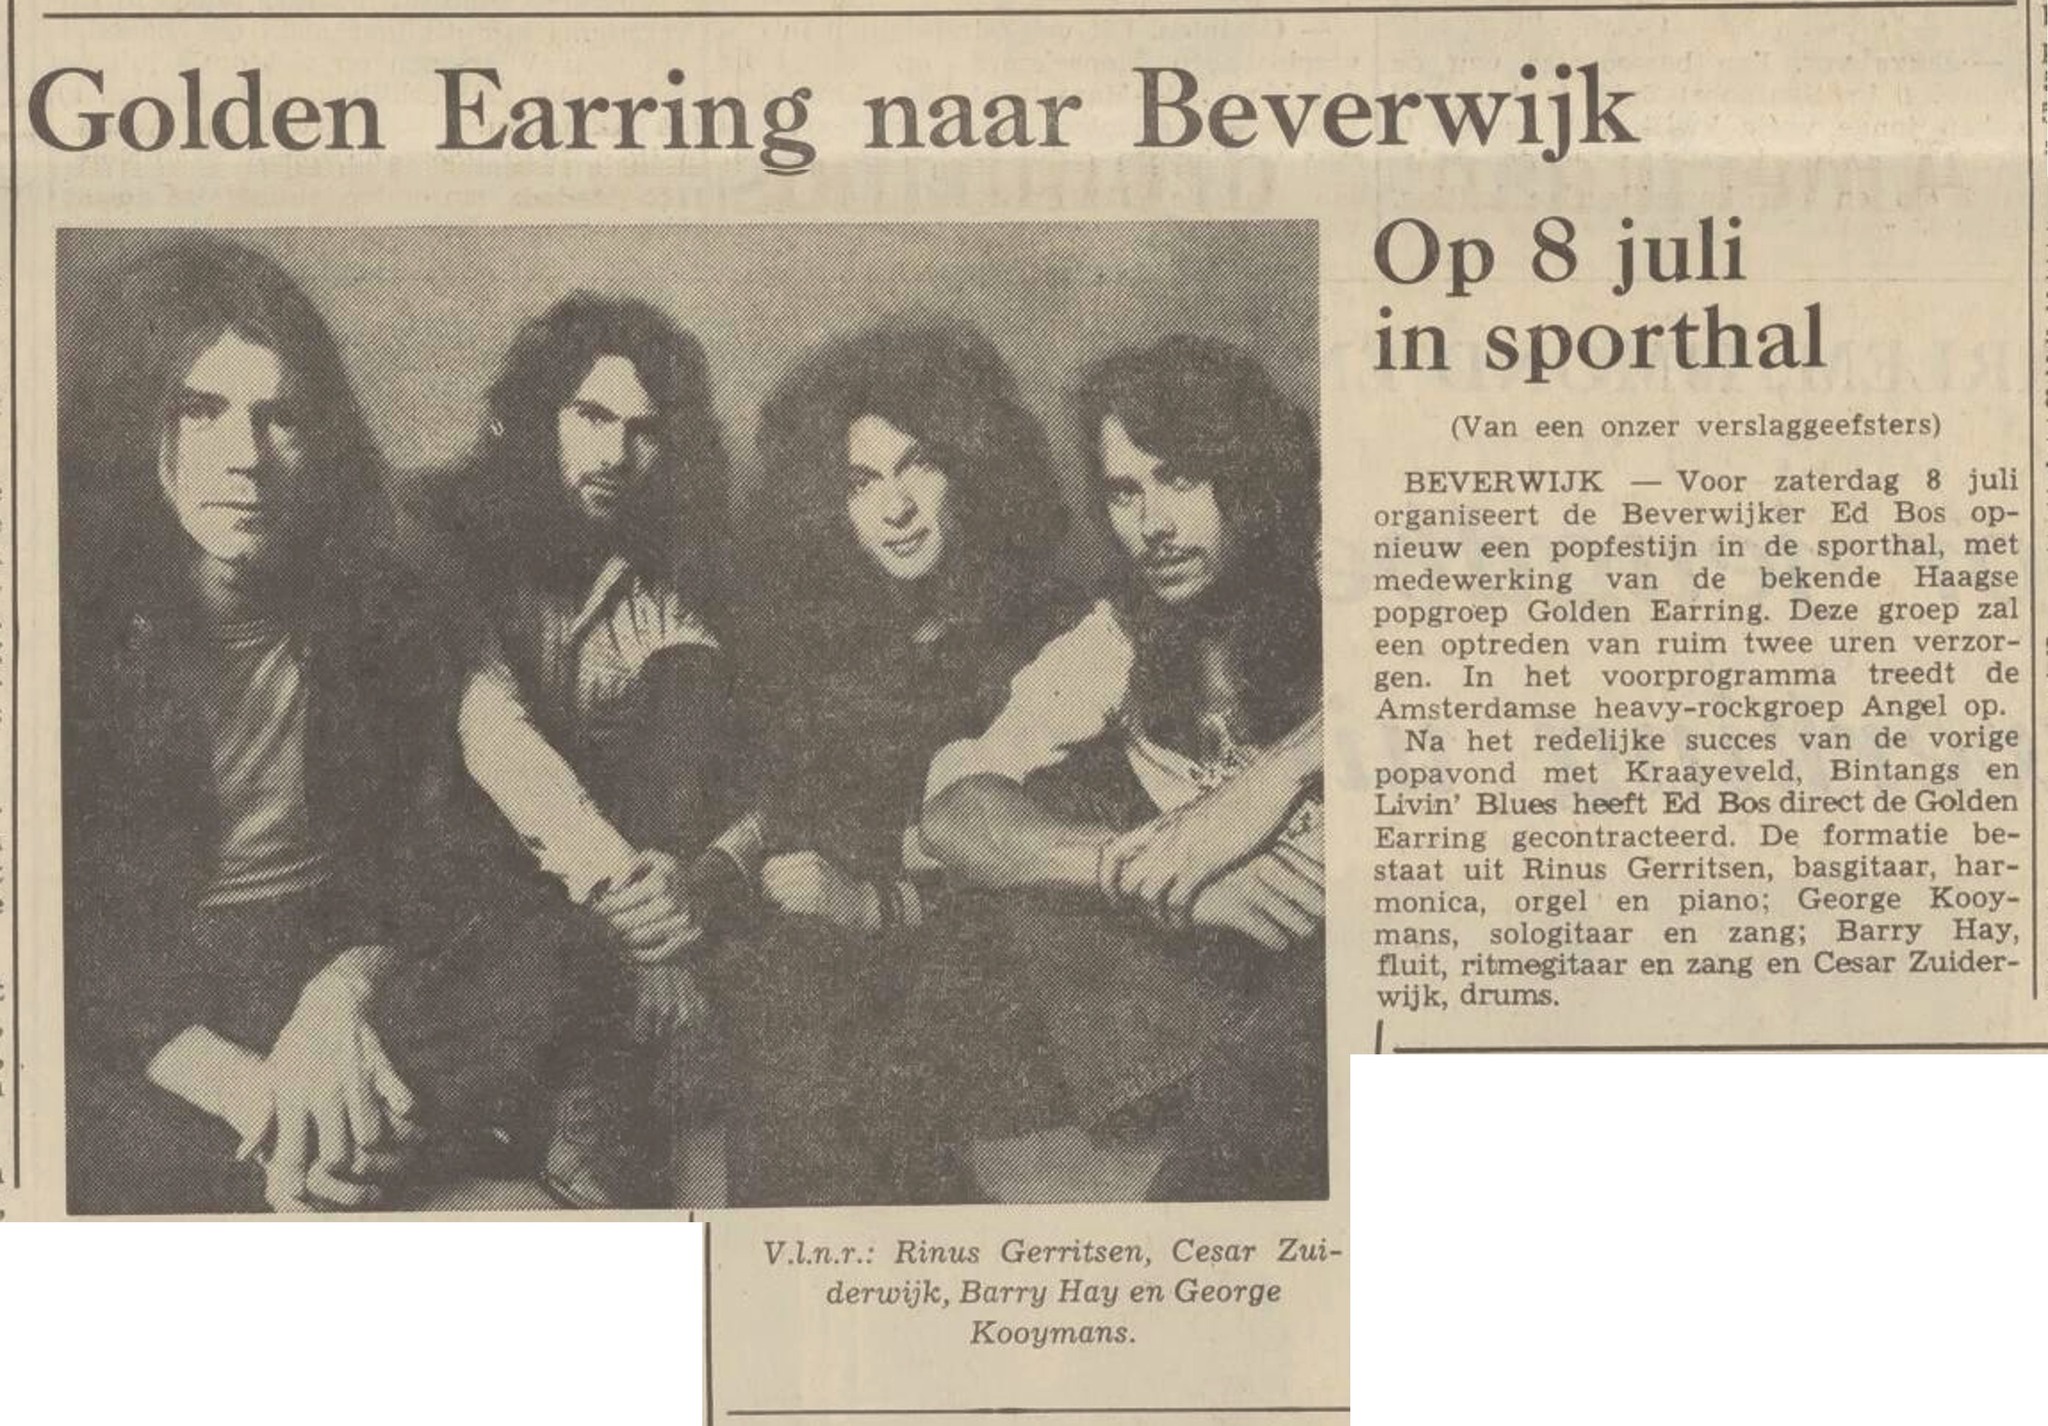 Golden Earring naar Beverwijk newspaper article Beverwijk show July 08 1972